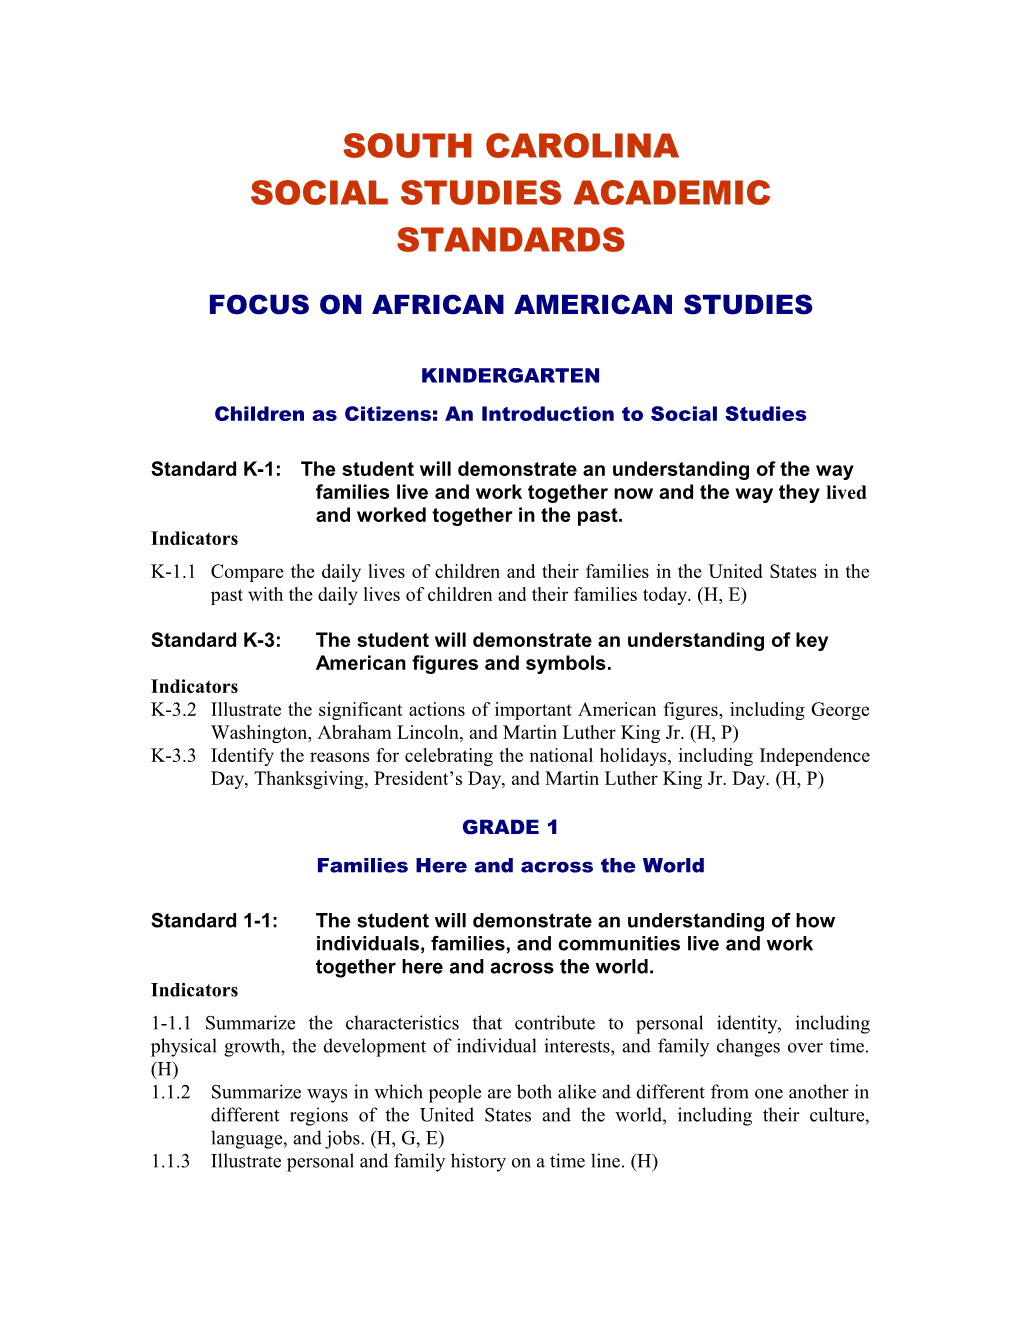 Focus on African American Studies